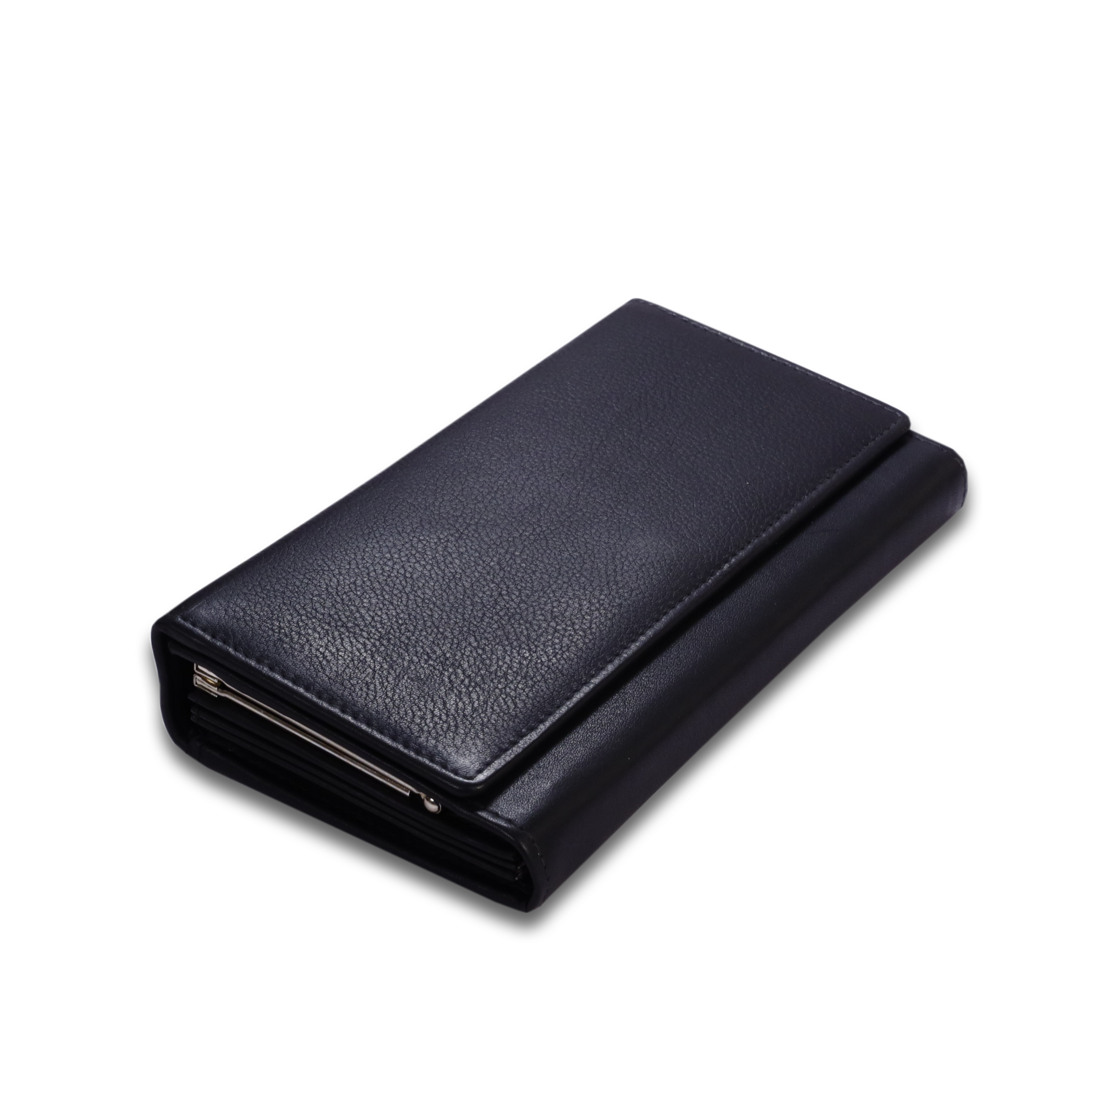 Leather Solid Black Zip Women Wallet